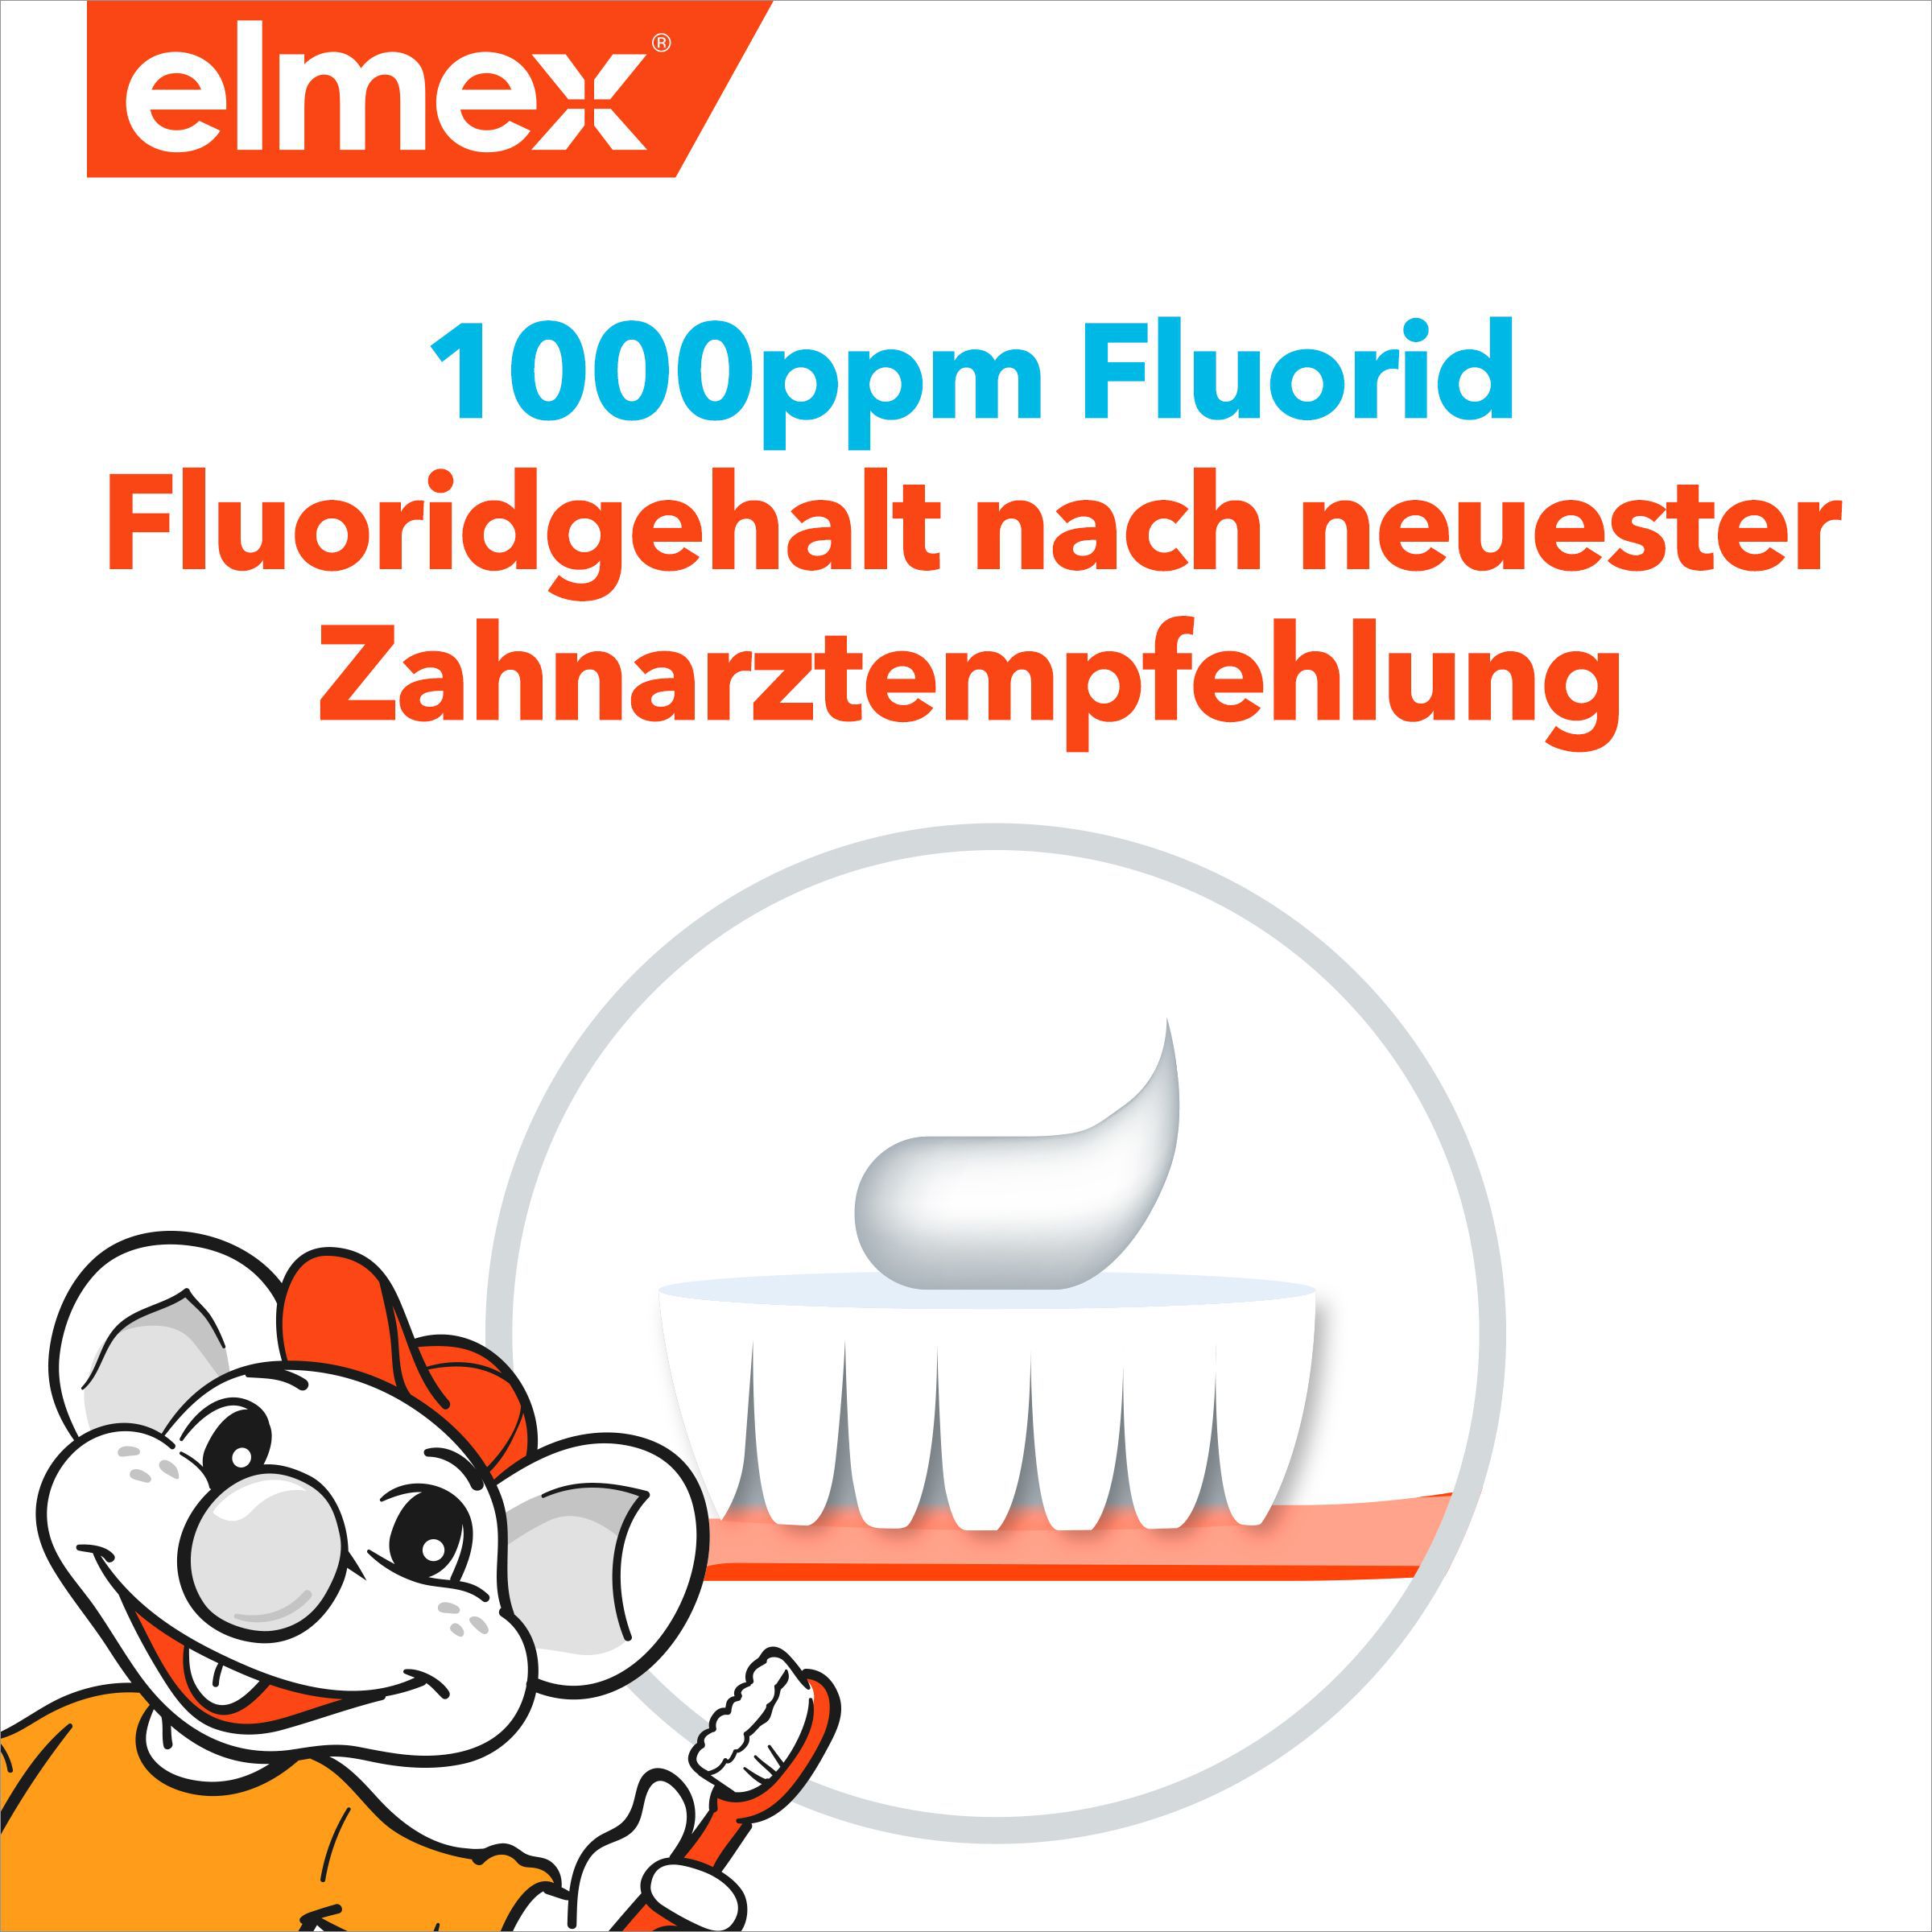 elmex Kinder-Zahnpasta zum Schutz der Milchzähne gegen Karies duo Pack